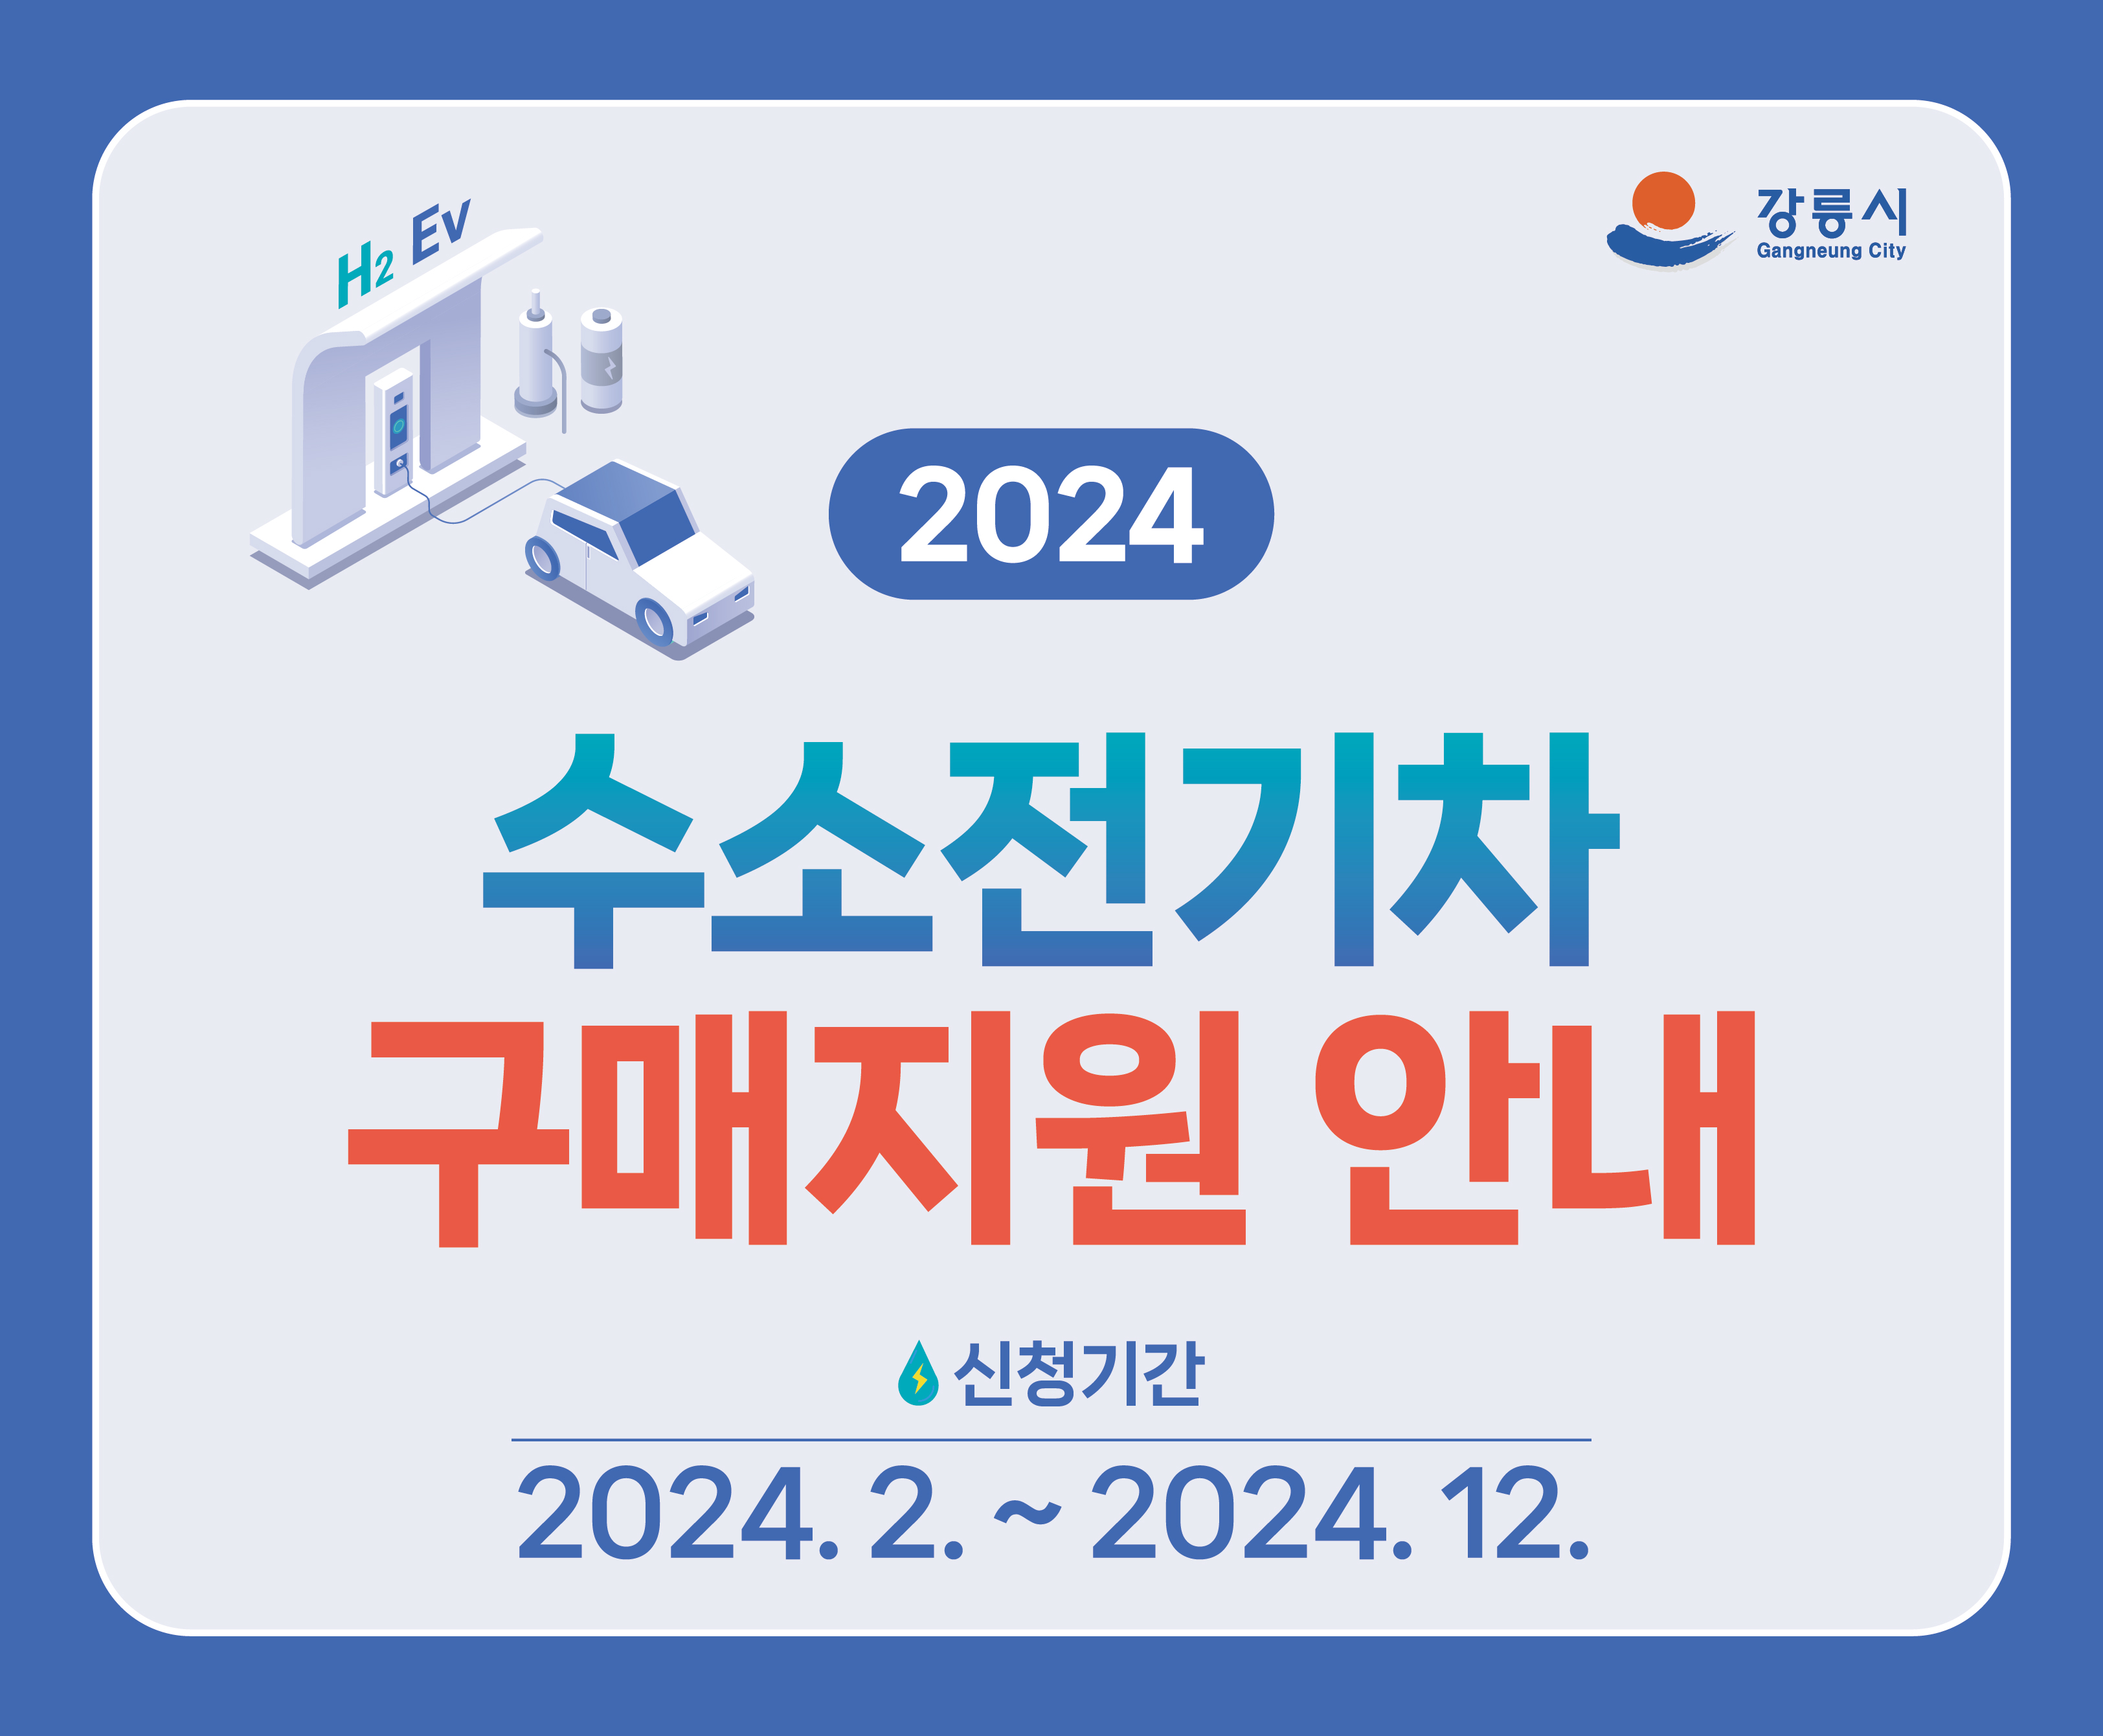 2024 수소전기차 구매지원 안내
신청기간: 2024. 2. ~2024. 12.